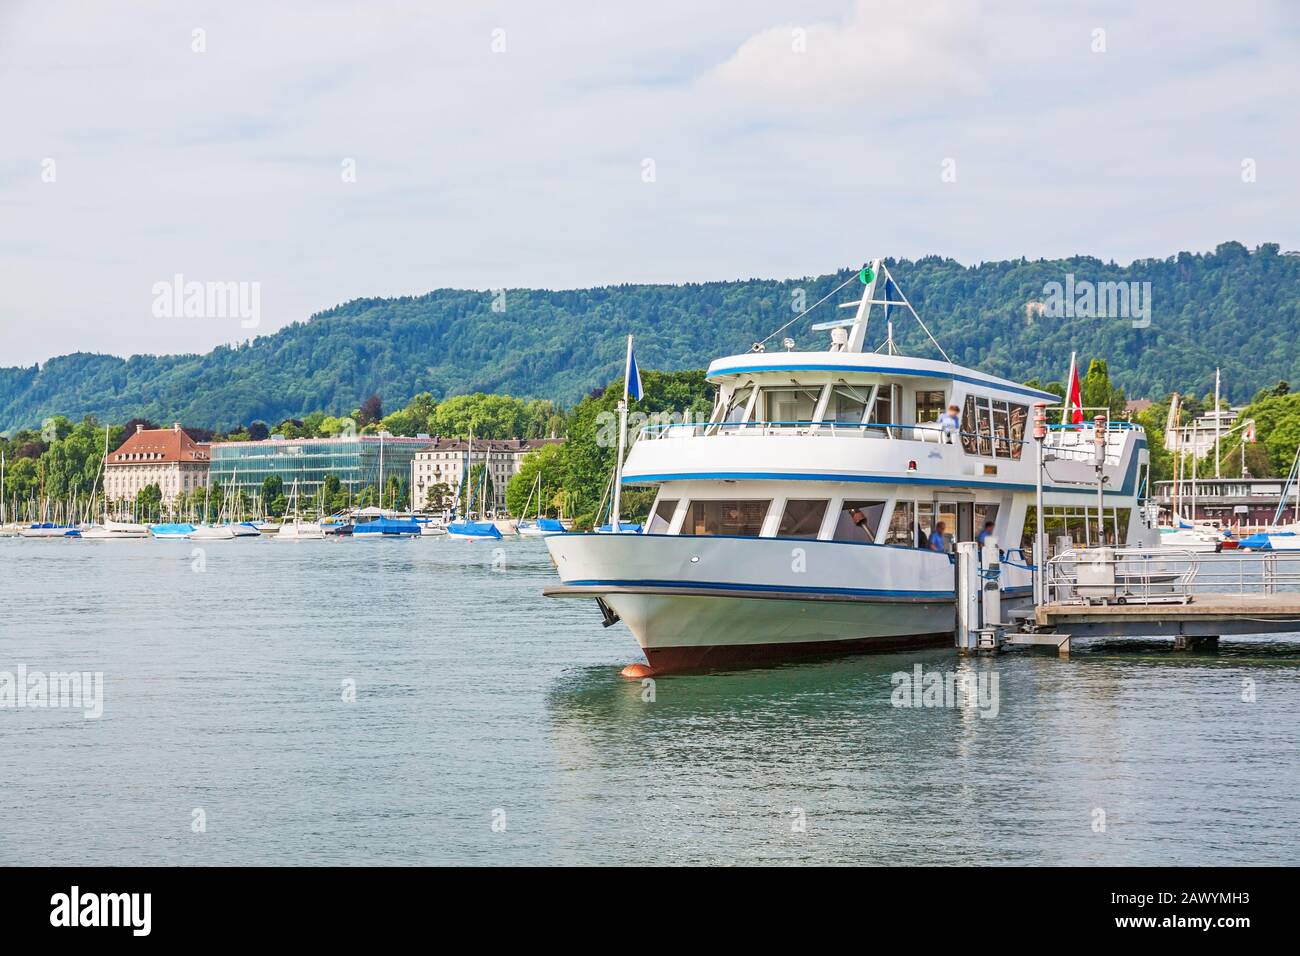 Zurigo, Svizzera - 10 giugno 2017: Imbarcazione per escursioni con arrivo al molo di navigazione Burkliplatz. Riva occidentale del lago di Zurigo, Mythenquai / Enge in backgroun Foto Stock